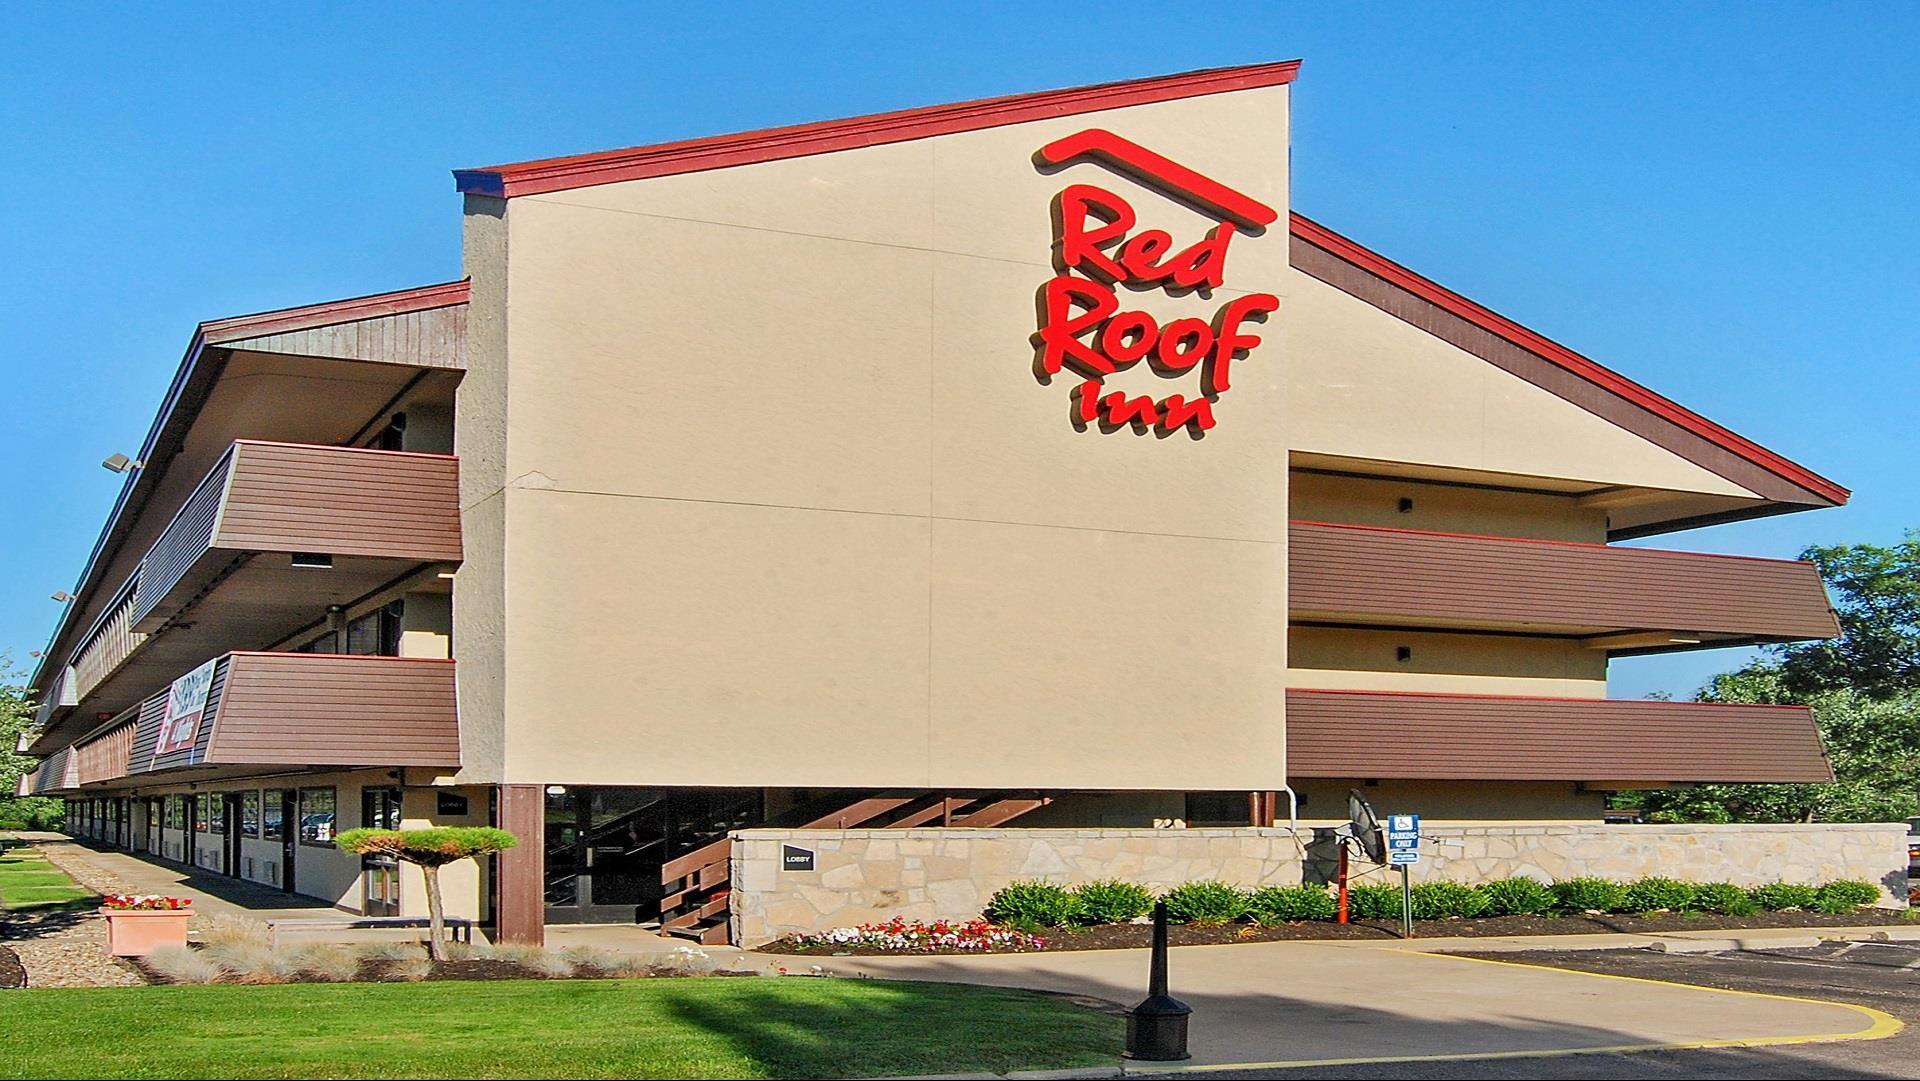 Red Roof Inn Toledo - University in Toledo, OH